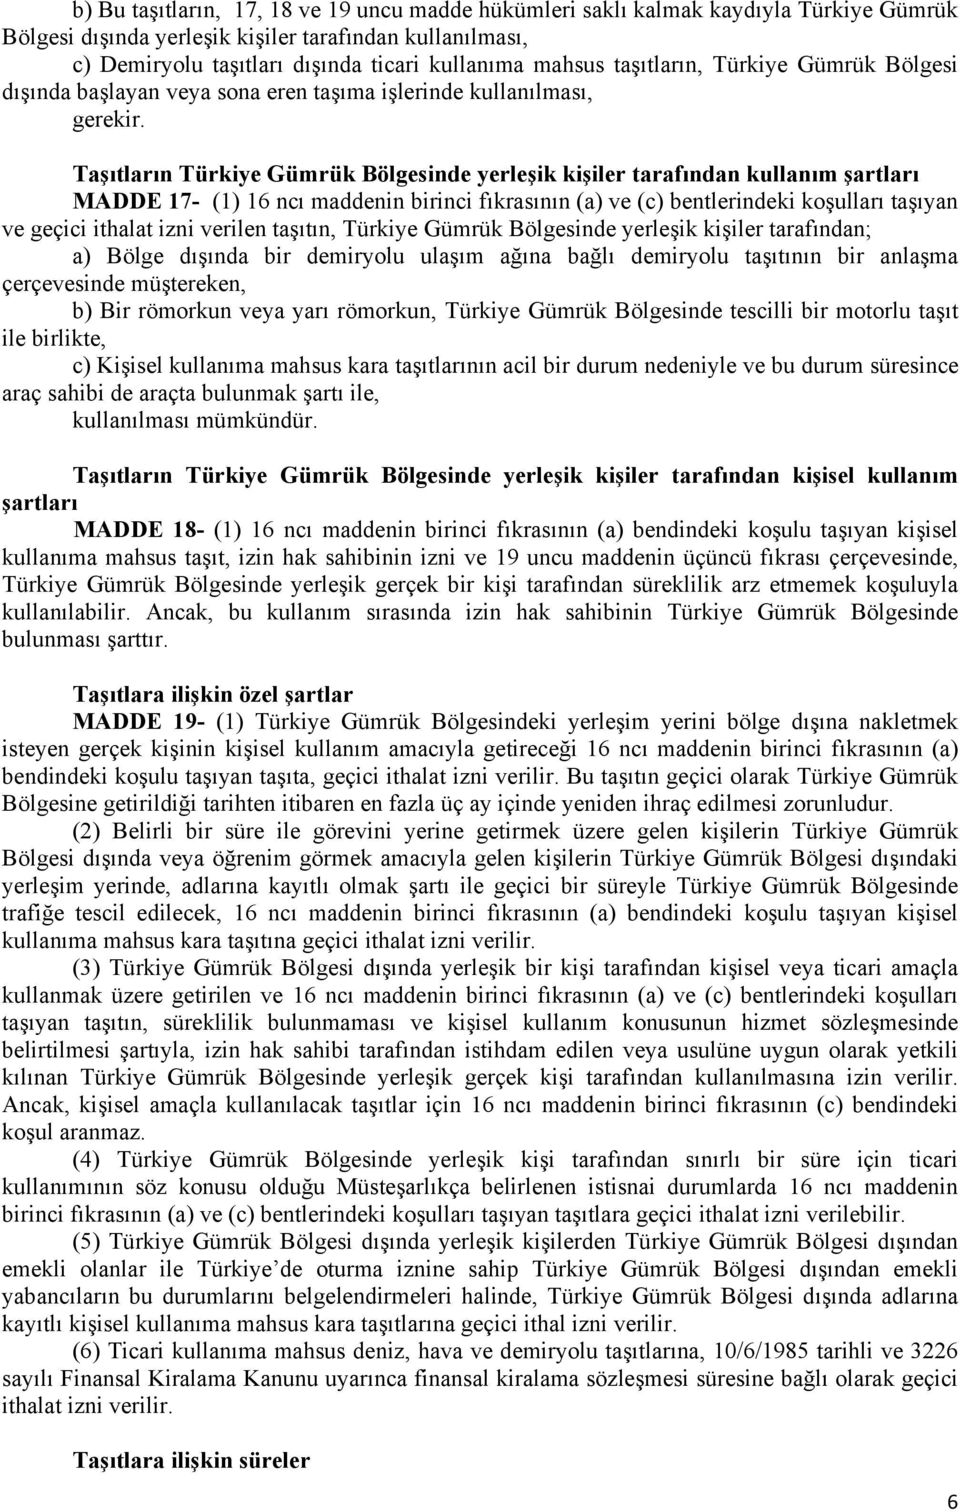 Taşıtların Türkiye Gümrük Bölgesinde yerleşik kişiler tarafından kullanım şartları MADDE 17- (1) 16 ncı maddenin birinci fıkrasının (a) ve (c) bentlerindeki koşulları taşıyan ve geçici ithalat izni